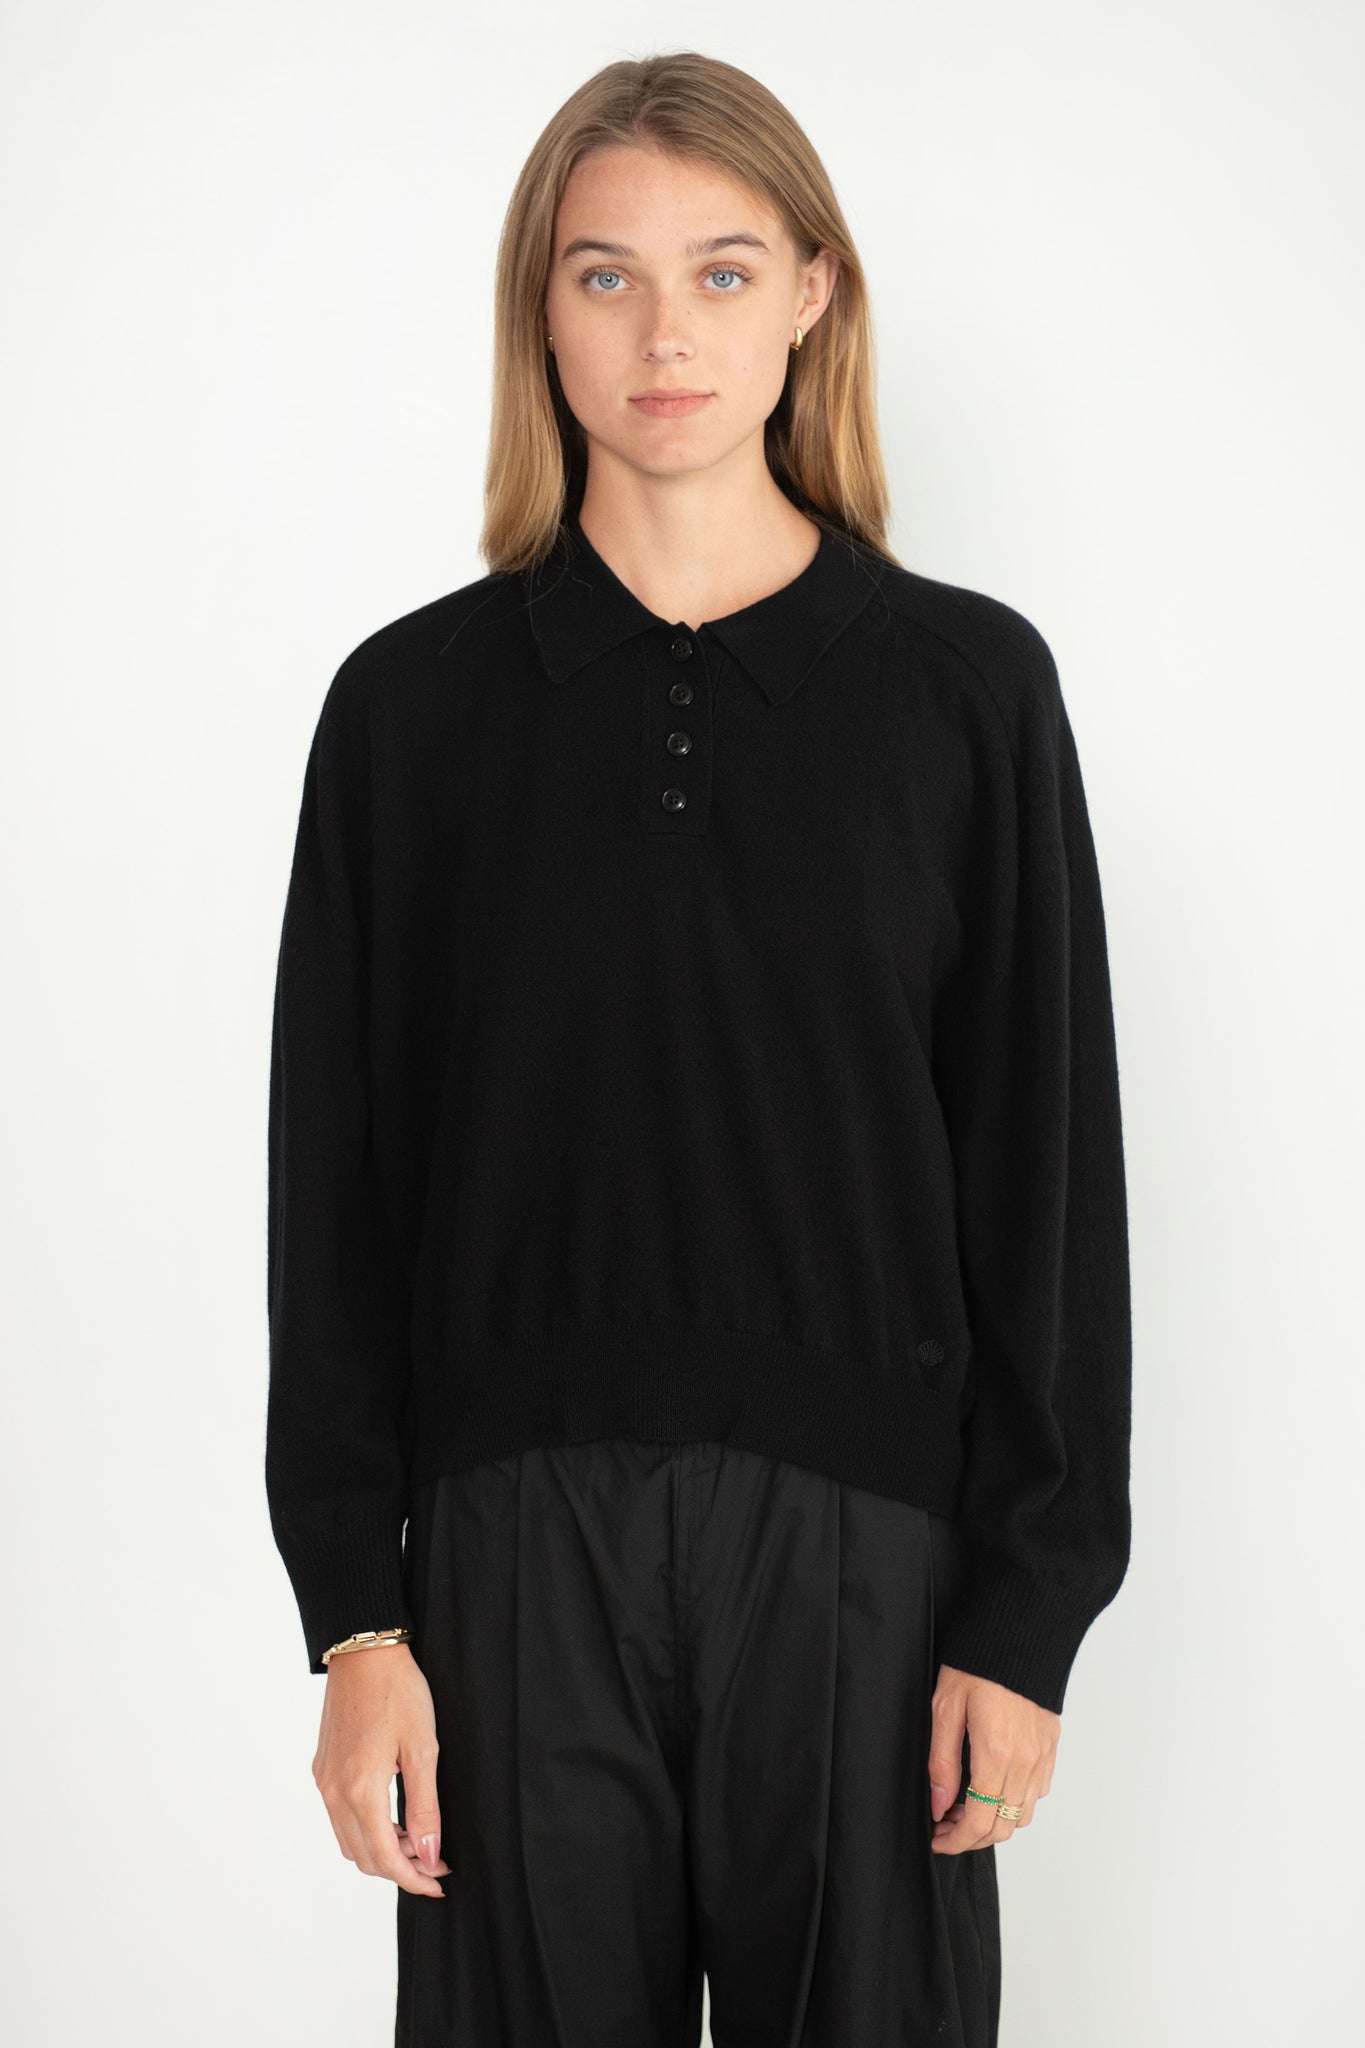 LOULOU STUDIO - Forana Cashmere Shirt, Black